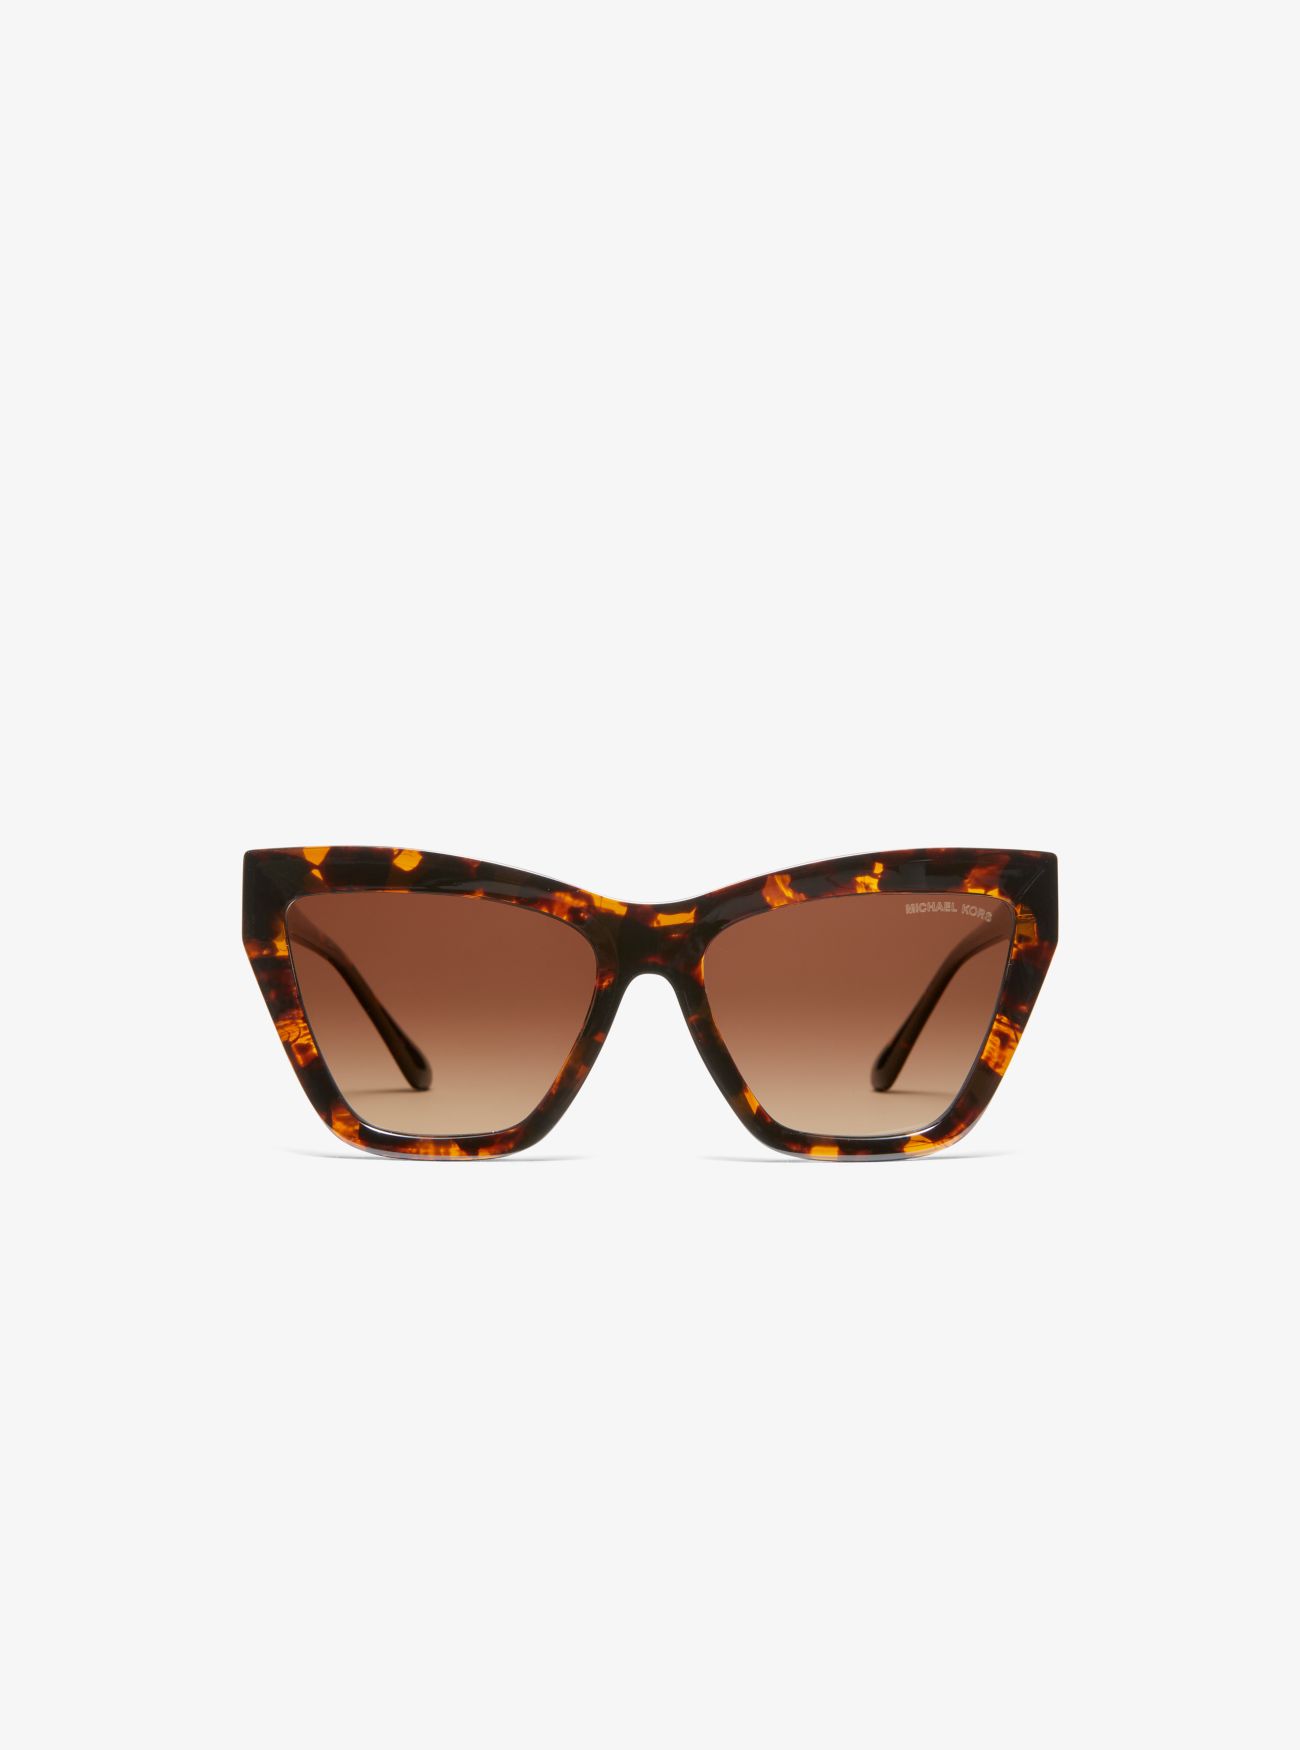 MK Dubai Sunglasses - Brown - Michael Kors